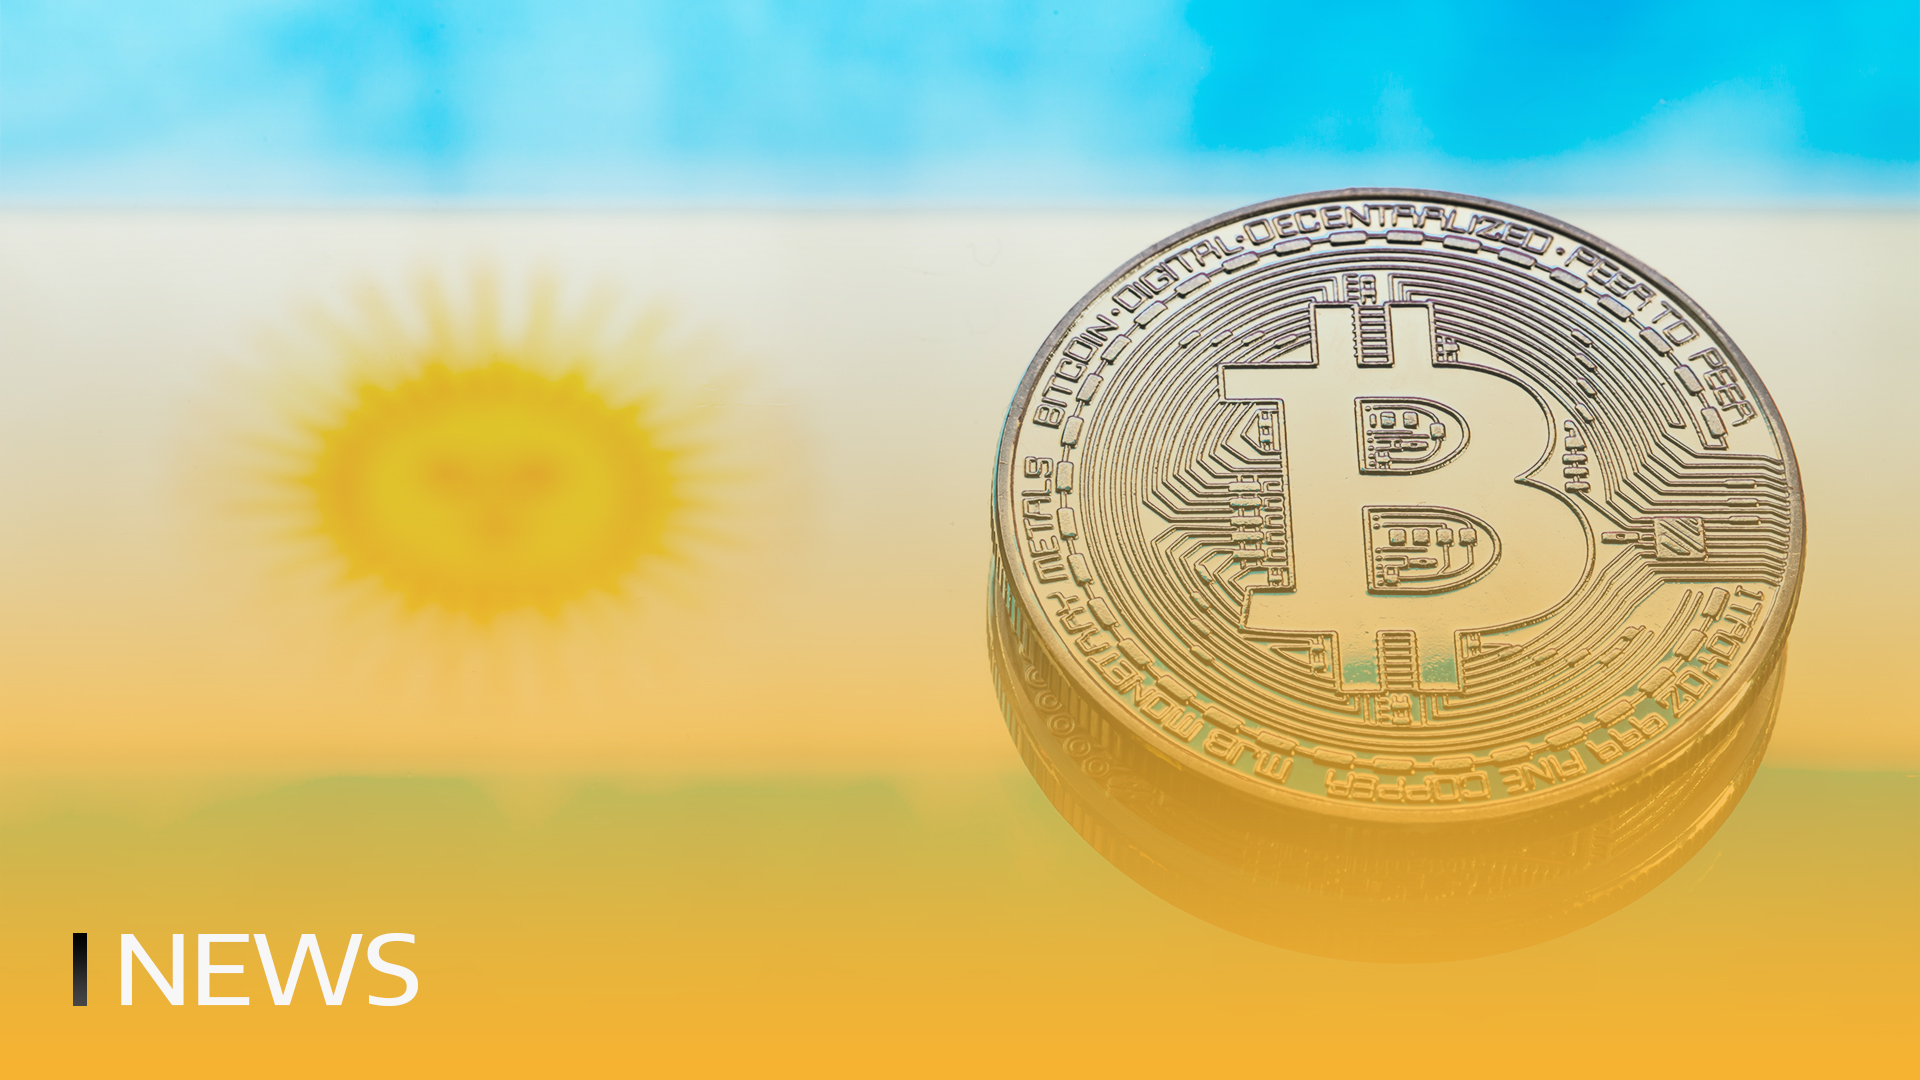 Poptávka po bitcoinech v Argentině dosáhla dvouletého maxima